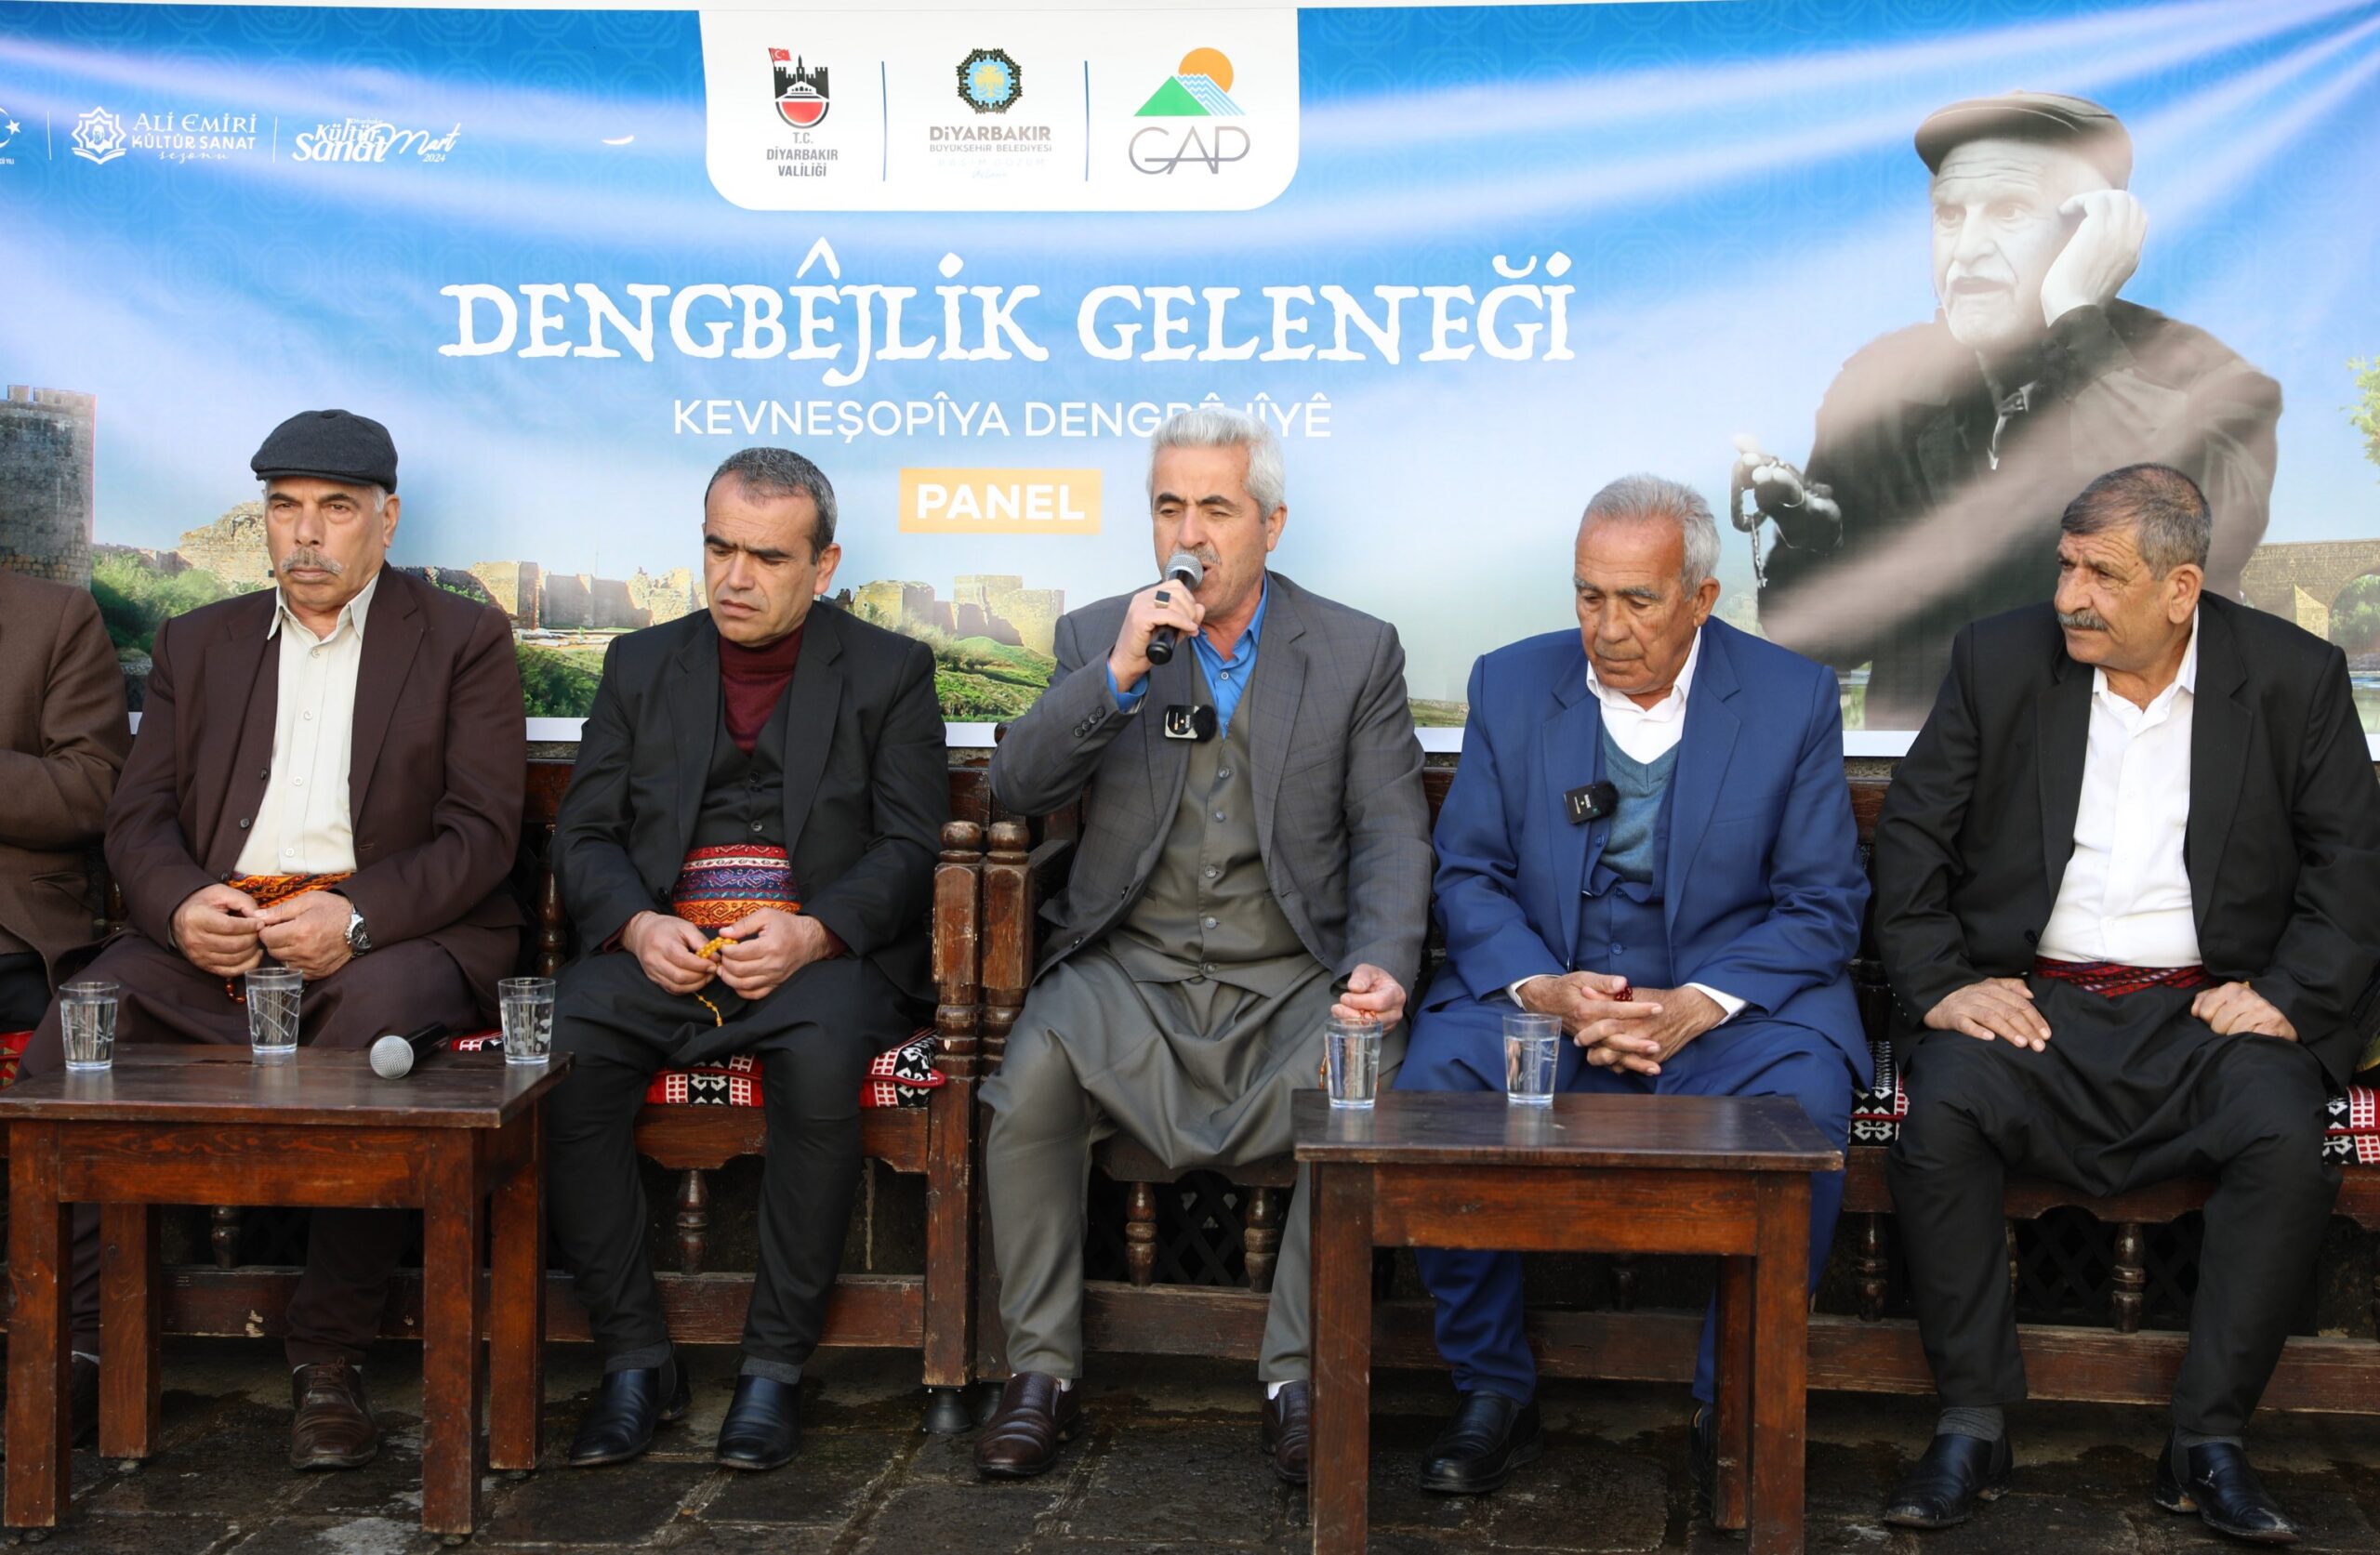 Diyarbakır’da “Dengbejlik Geleneği” paneli